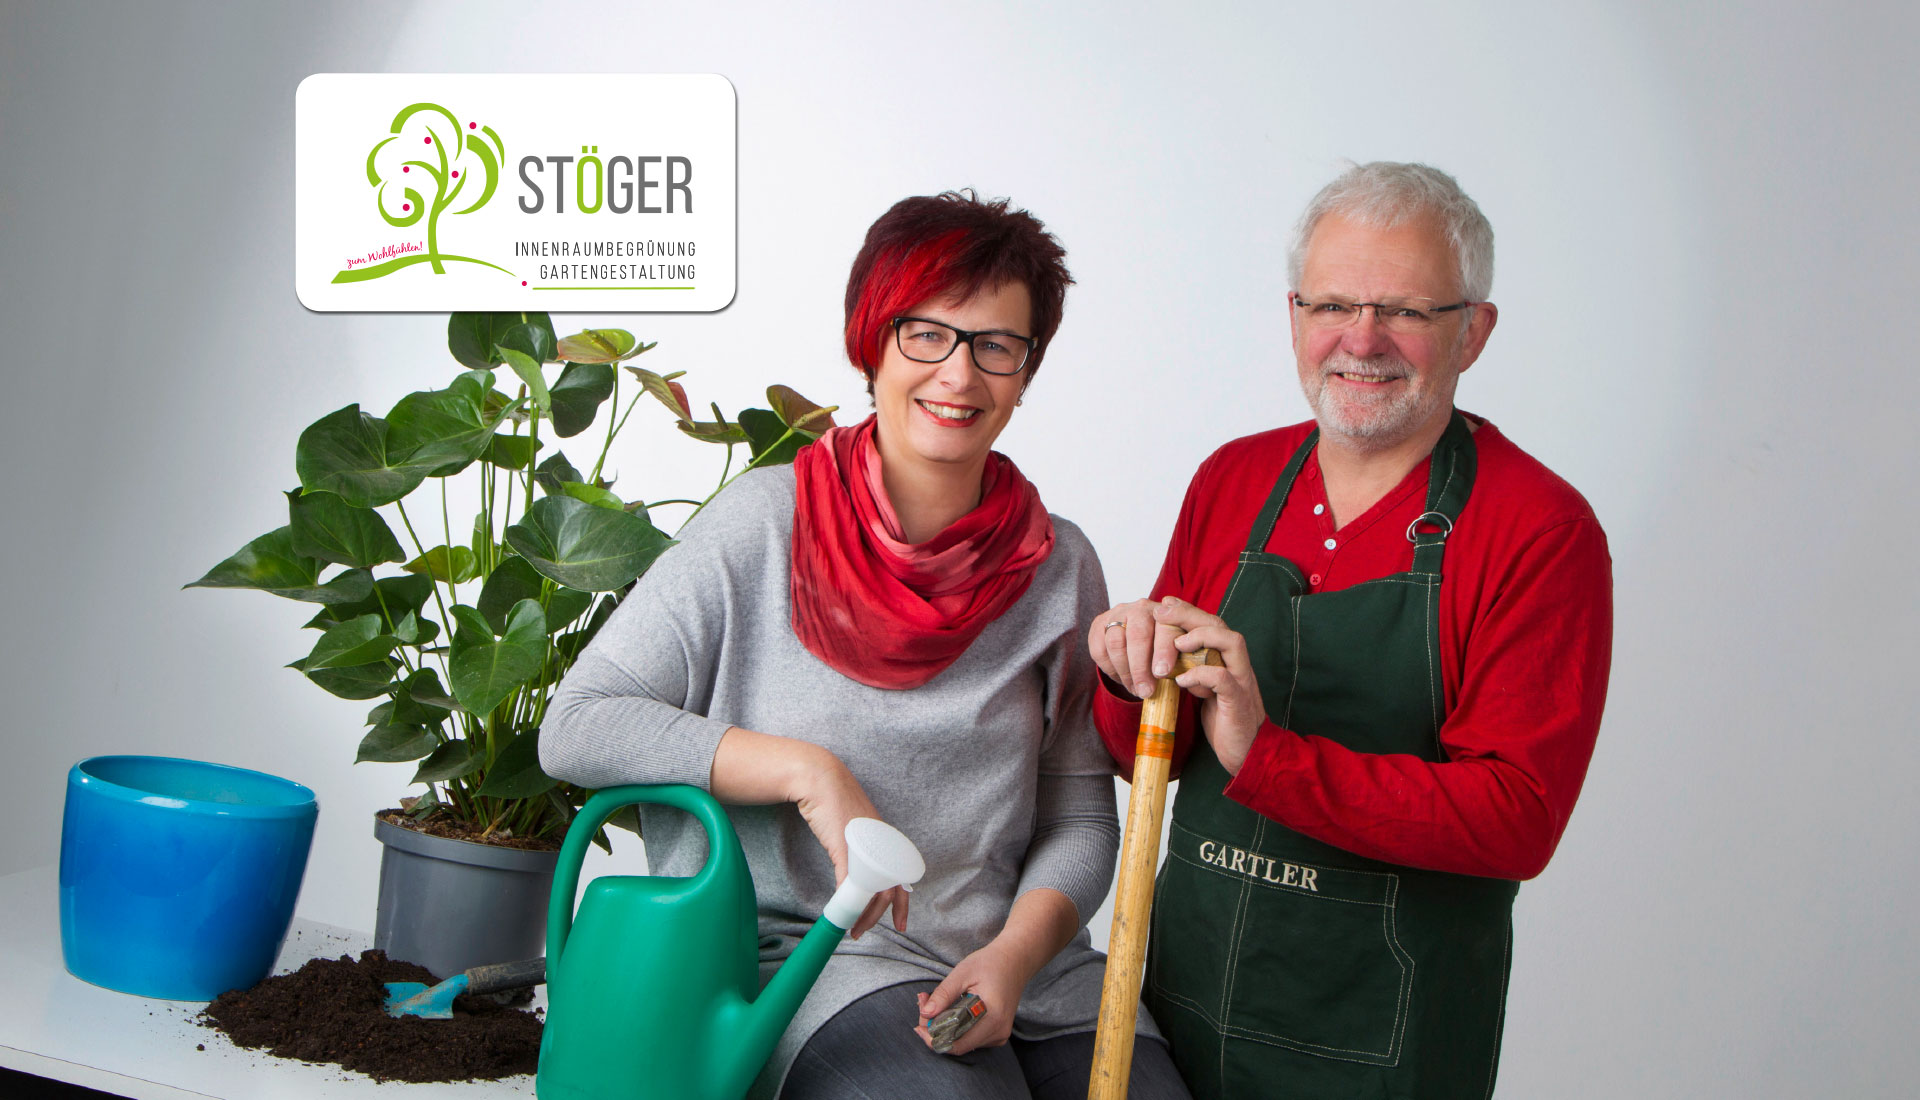 Andrea Stöger-Wastell, Johannes Stöger mit Gartenwerkzeug